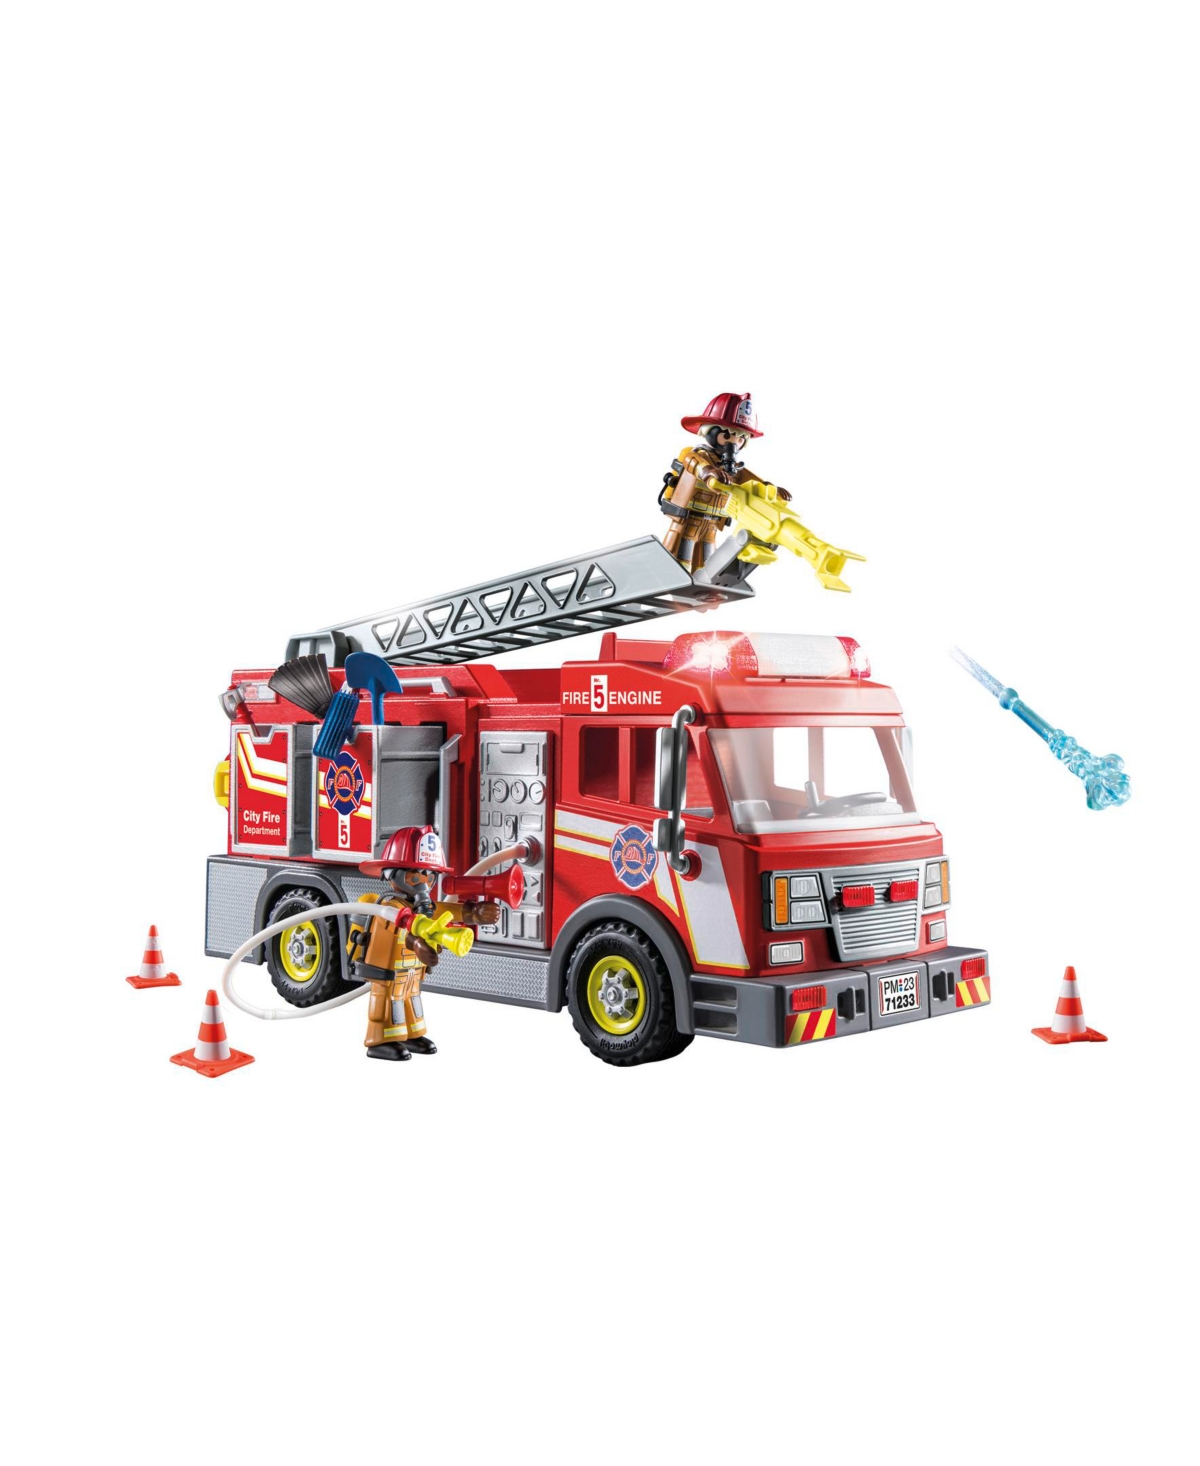 Playmobil Kids' Fire Truck In Multi